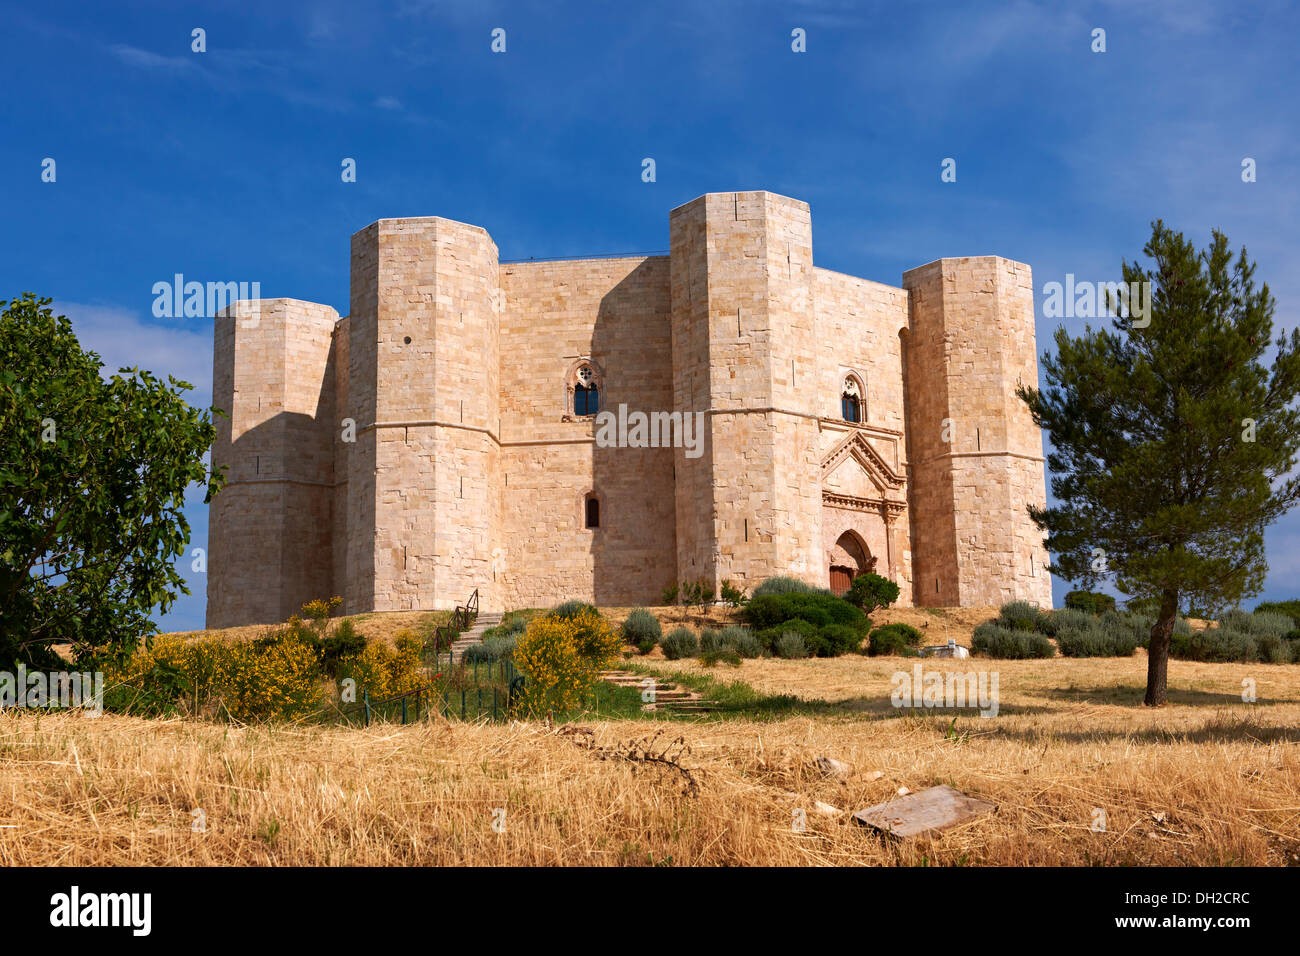 La cité médiévale château octogonal Castel del Monte, construit par  l'empereur Frédéric II dans le 1240's près de Andria dans les Pouilles ,  Italie Photo Stock - Alamy